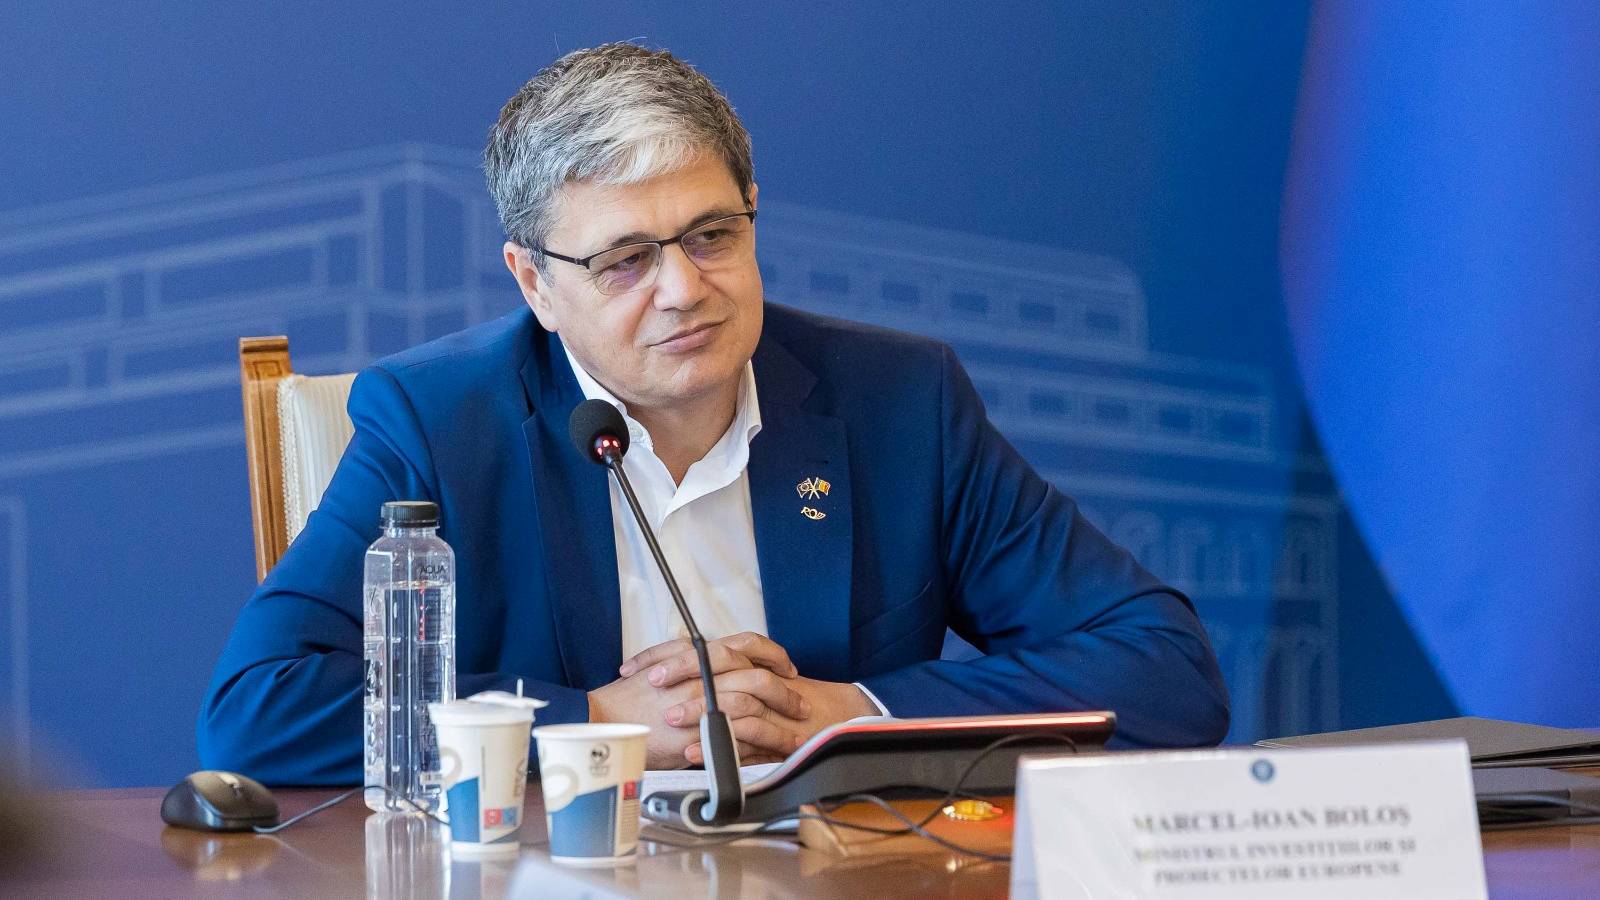 Marcel Bolos Nieuwe aankondigingen LAATSTE KEER Roemenië Investeringen Economie